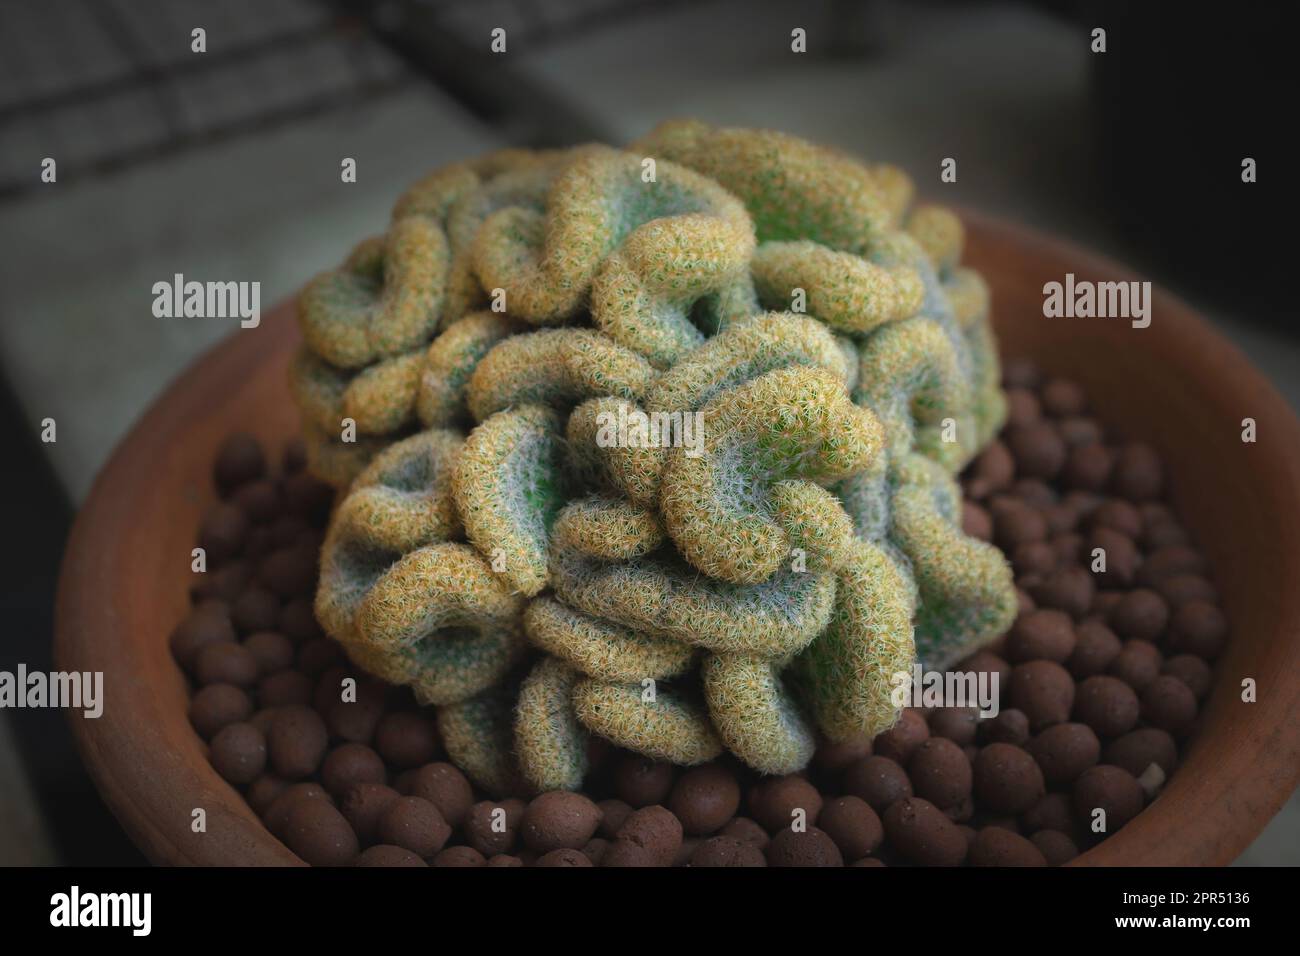 Le Cactus cérébral (Mammillaria elongata cristata) est un pille de cactus comme un cerveau humain dans un pot. Gros plan. Banque D'Images